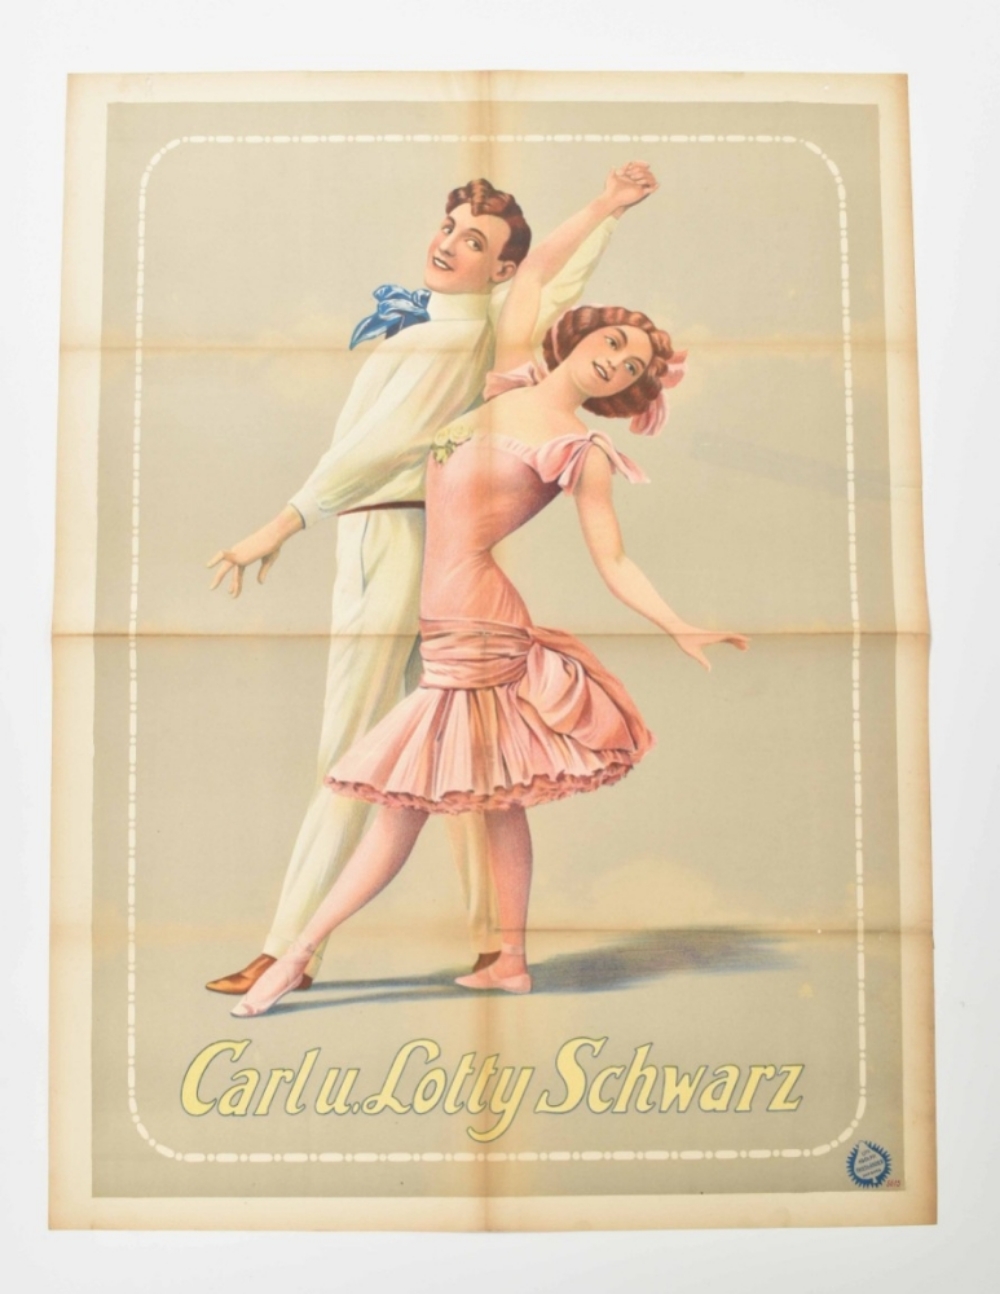 [Entertainment] [Ballet] Carl u. Lotty Schwarz Friedländer, Hamburg, 1912